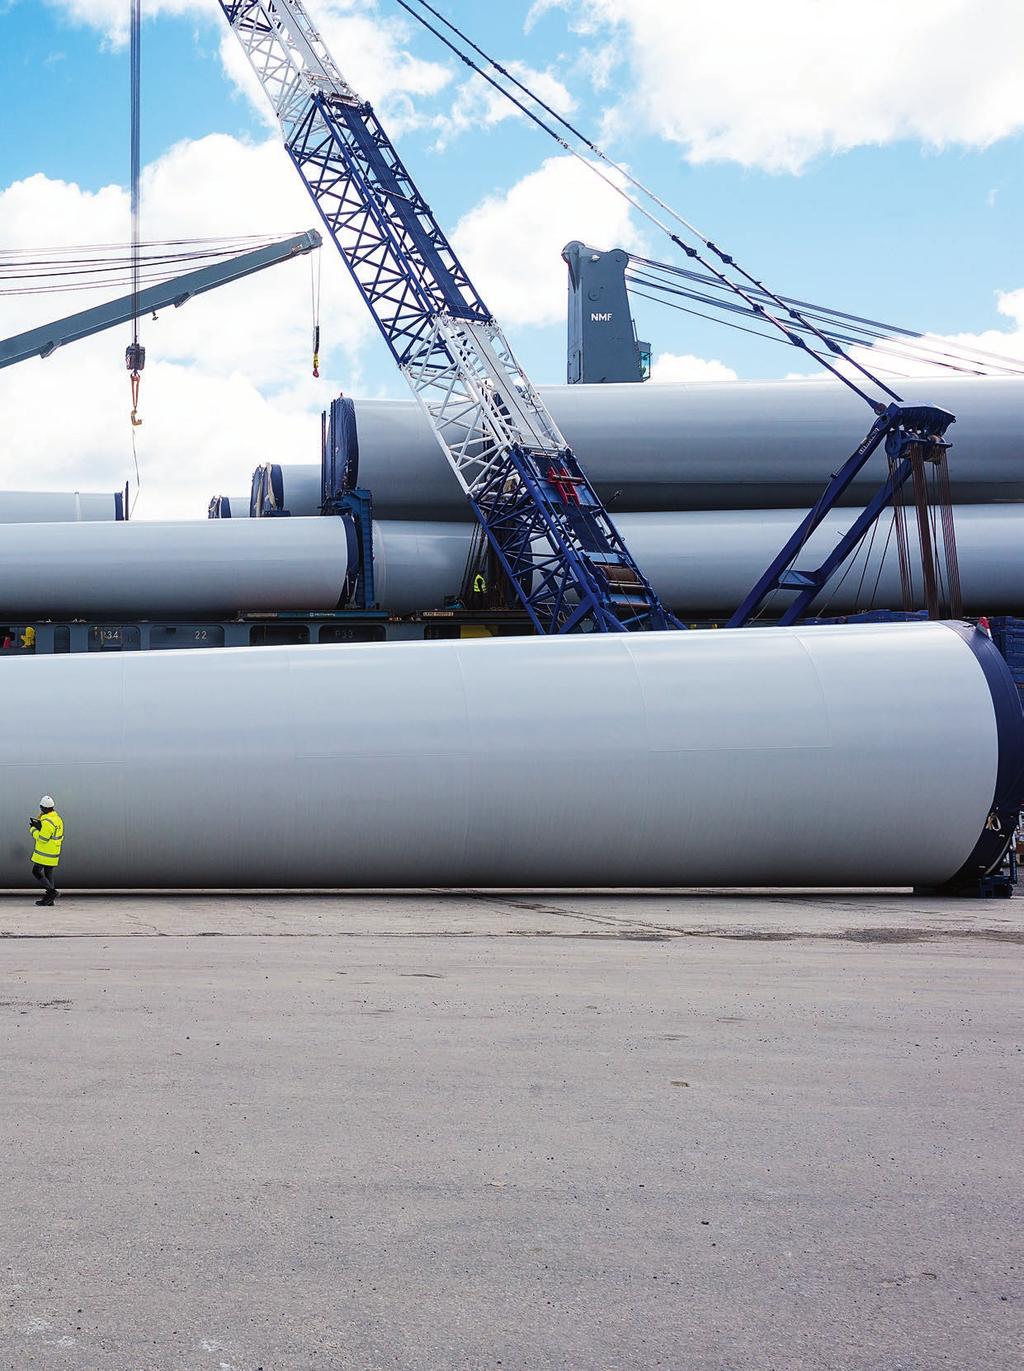 52 torndelar är lastade på lastfartyget Kingfisher där den tyngsta torndelen väger 87,4 ton. De utgör tillsammans 13 vindkraftverkstorn. Totalvikten är 3830 ton som lossas under en vecka.